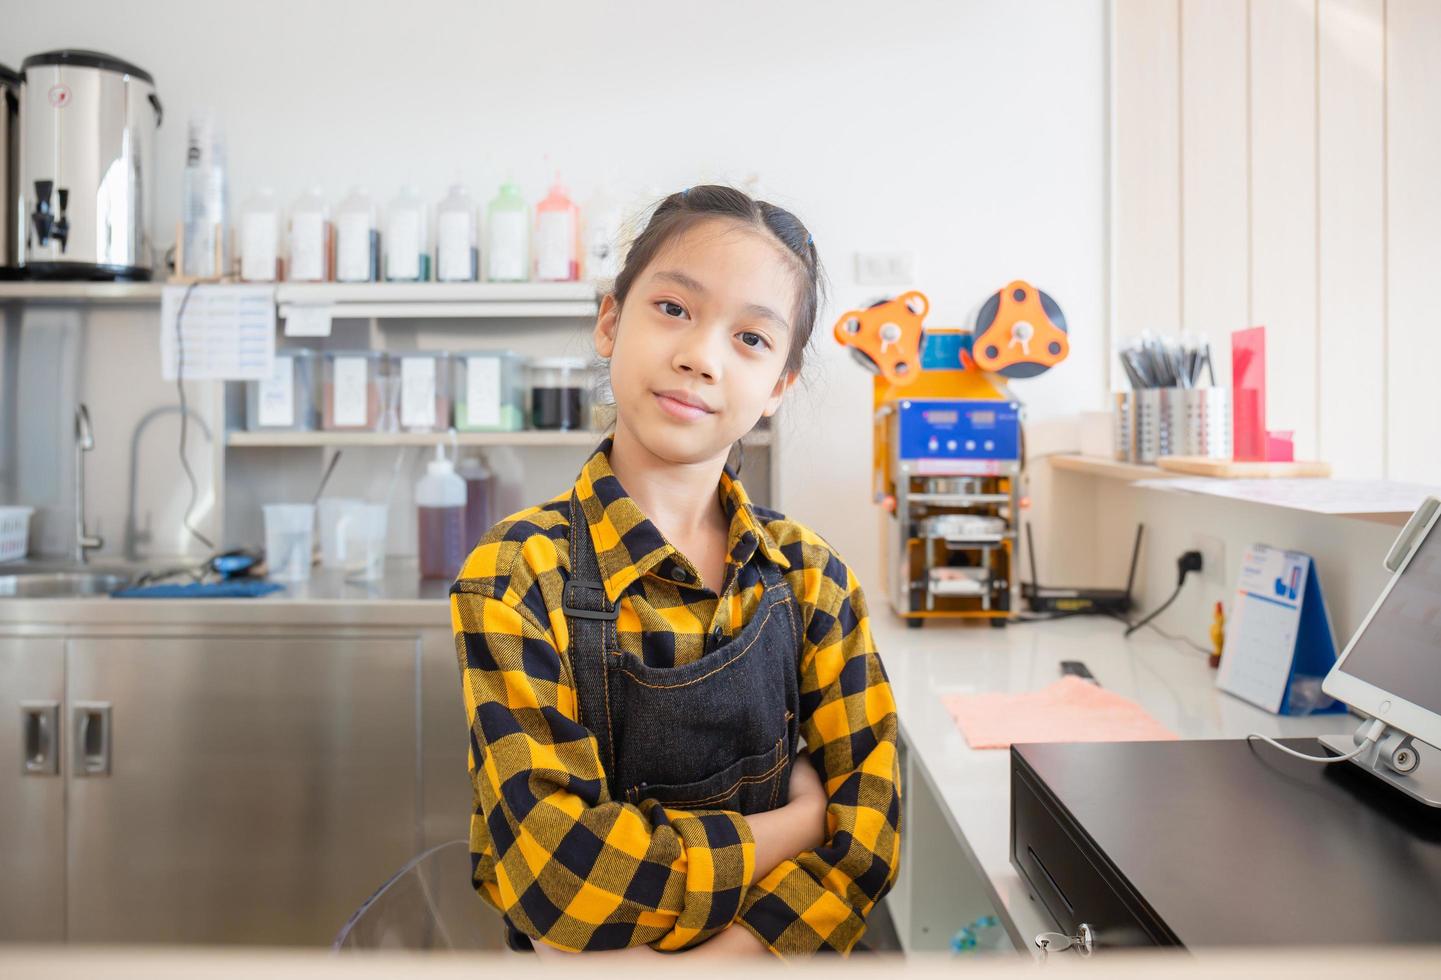 Aziatisch meisje met een schort blij gezicht glimlachend met gekruiste armen, lerende kassier werkend aan de kassa in café, onderwijsconcept foto